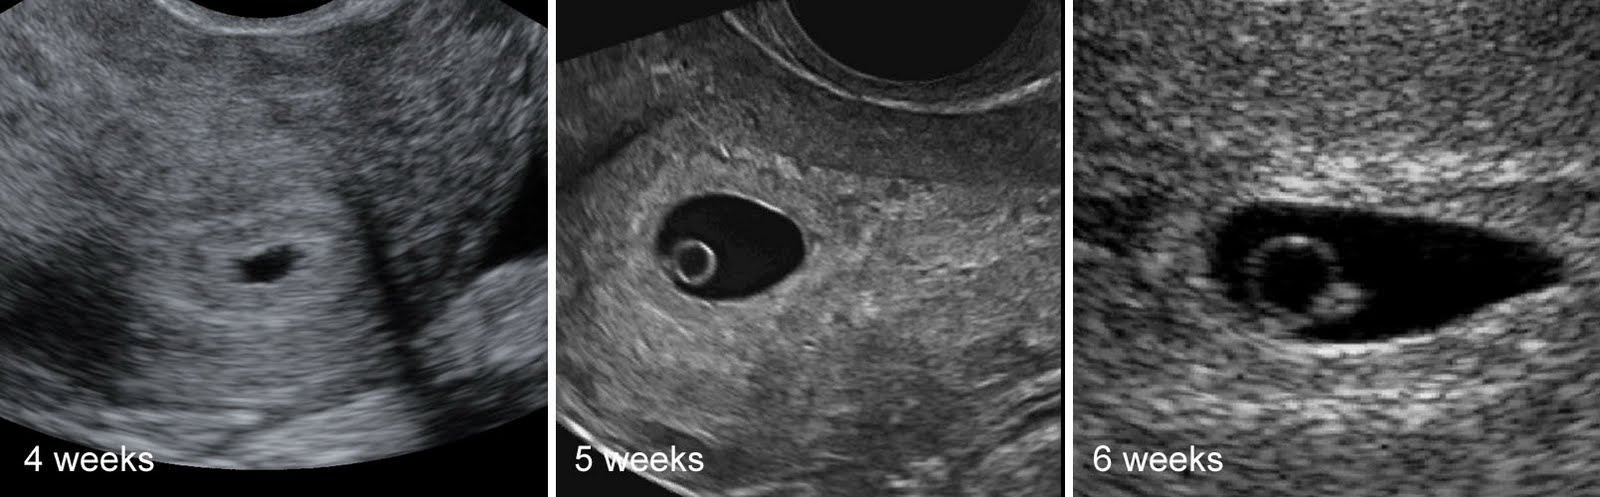 6 недель срок беременной. 4 Эмбриональная неделя беременности УЗИ. Эмбрион на 5 неделе беременности УЗИ. Беременность 2-3 недели фото плода УЗИ. Эмбрион на 4 неделе беременности УЗИ.